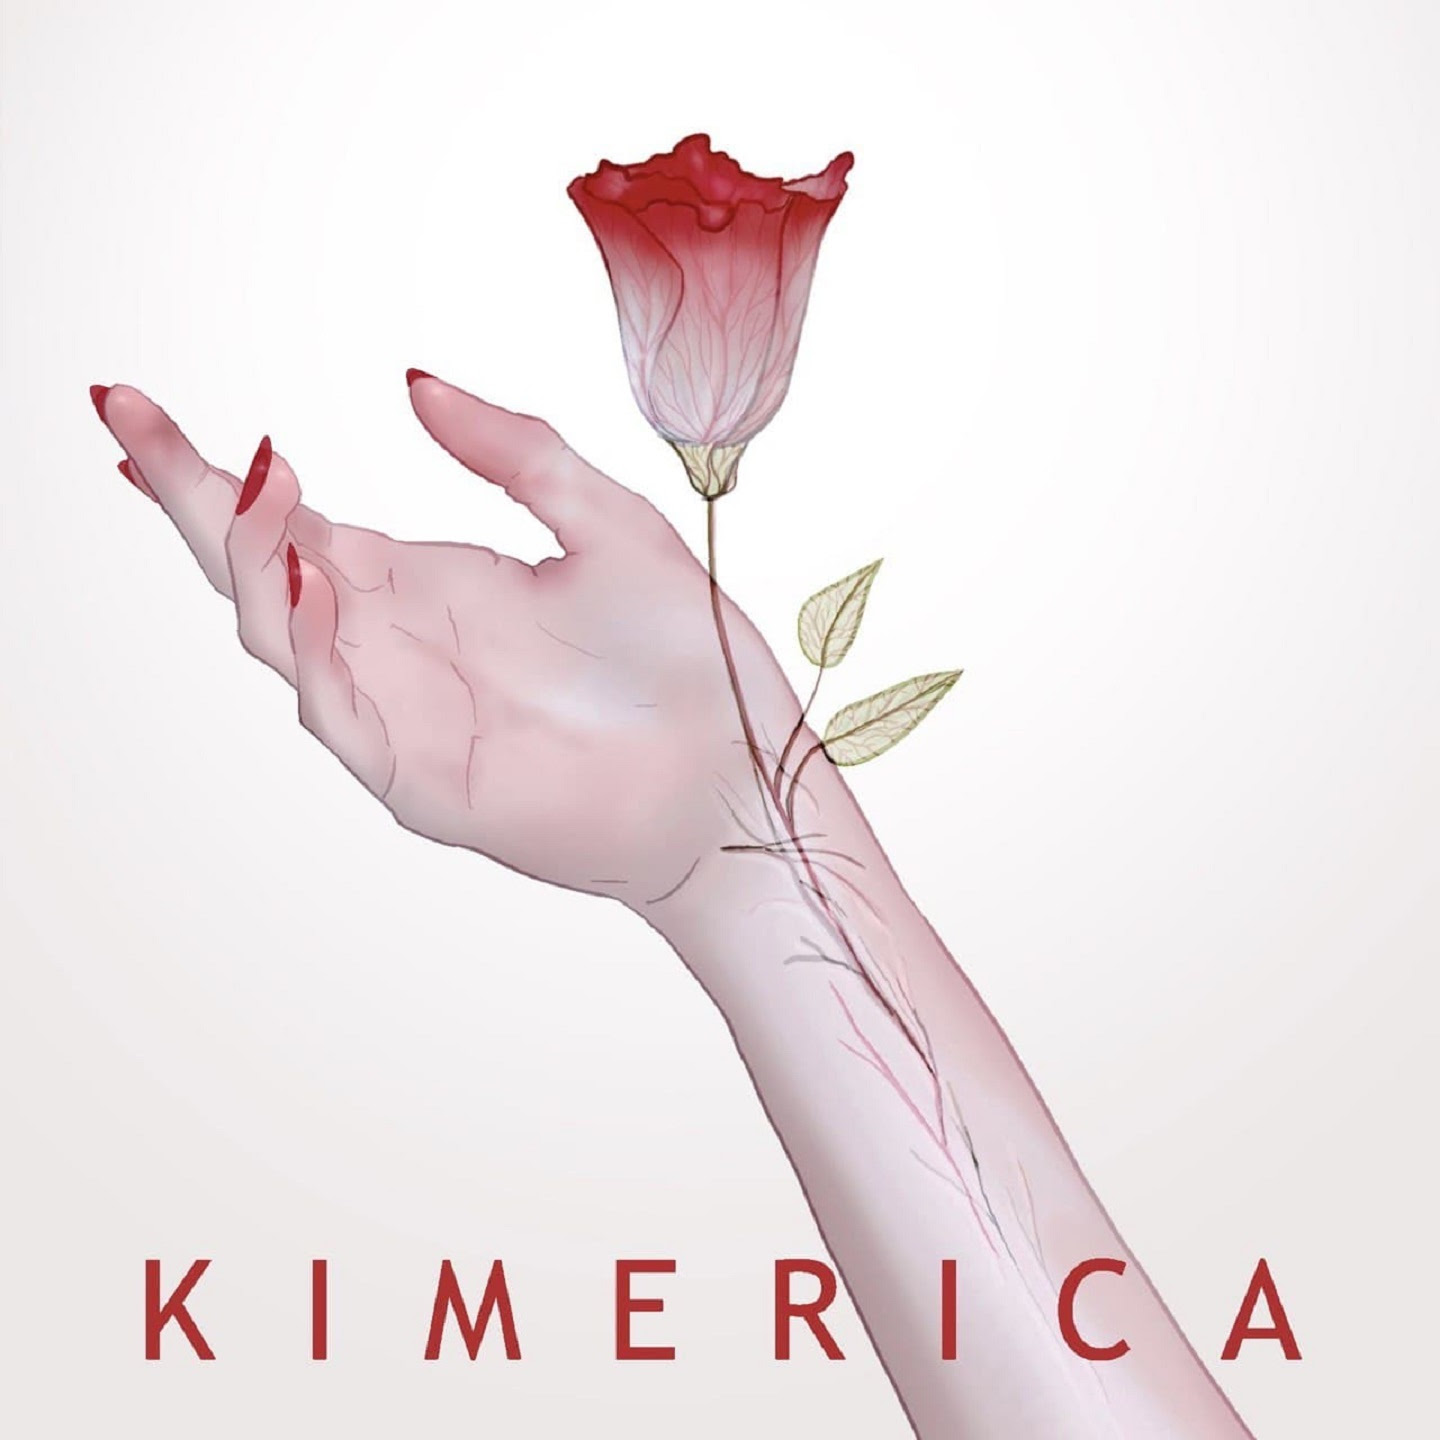 Kimerica presenta il singolo “Guarda come me ne vado”